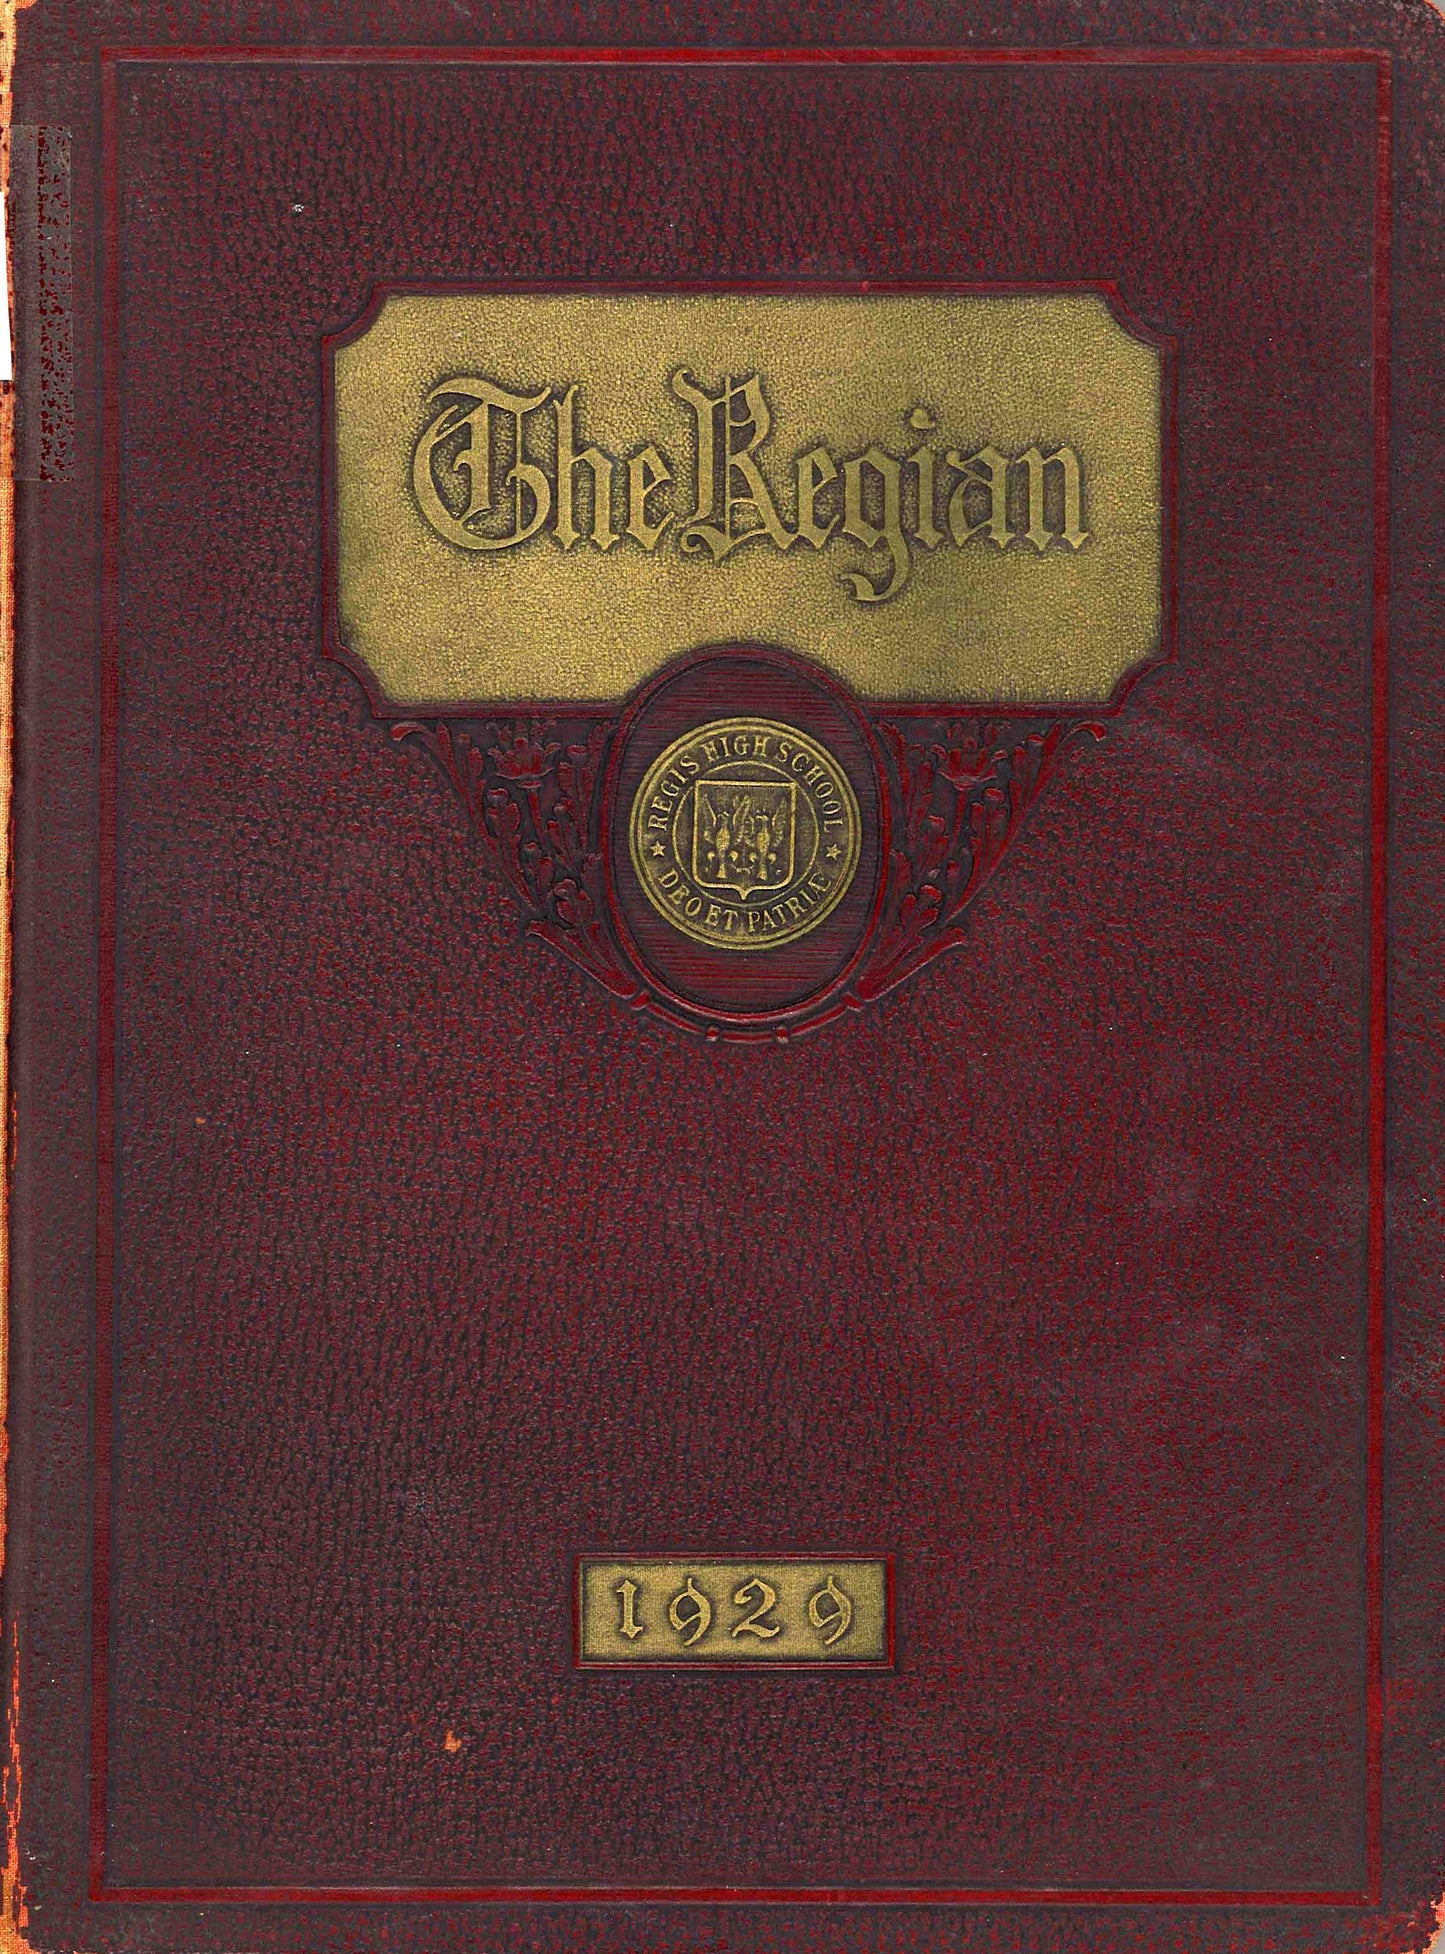 The Regian - 1929